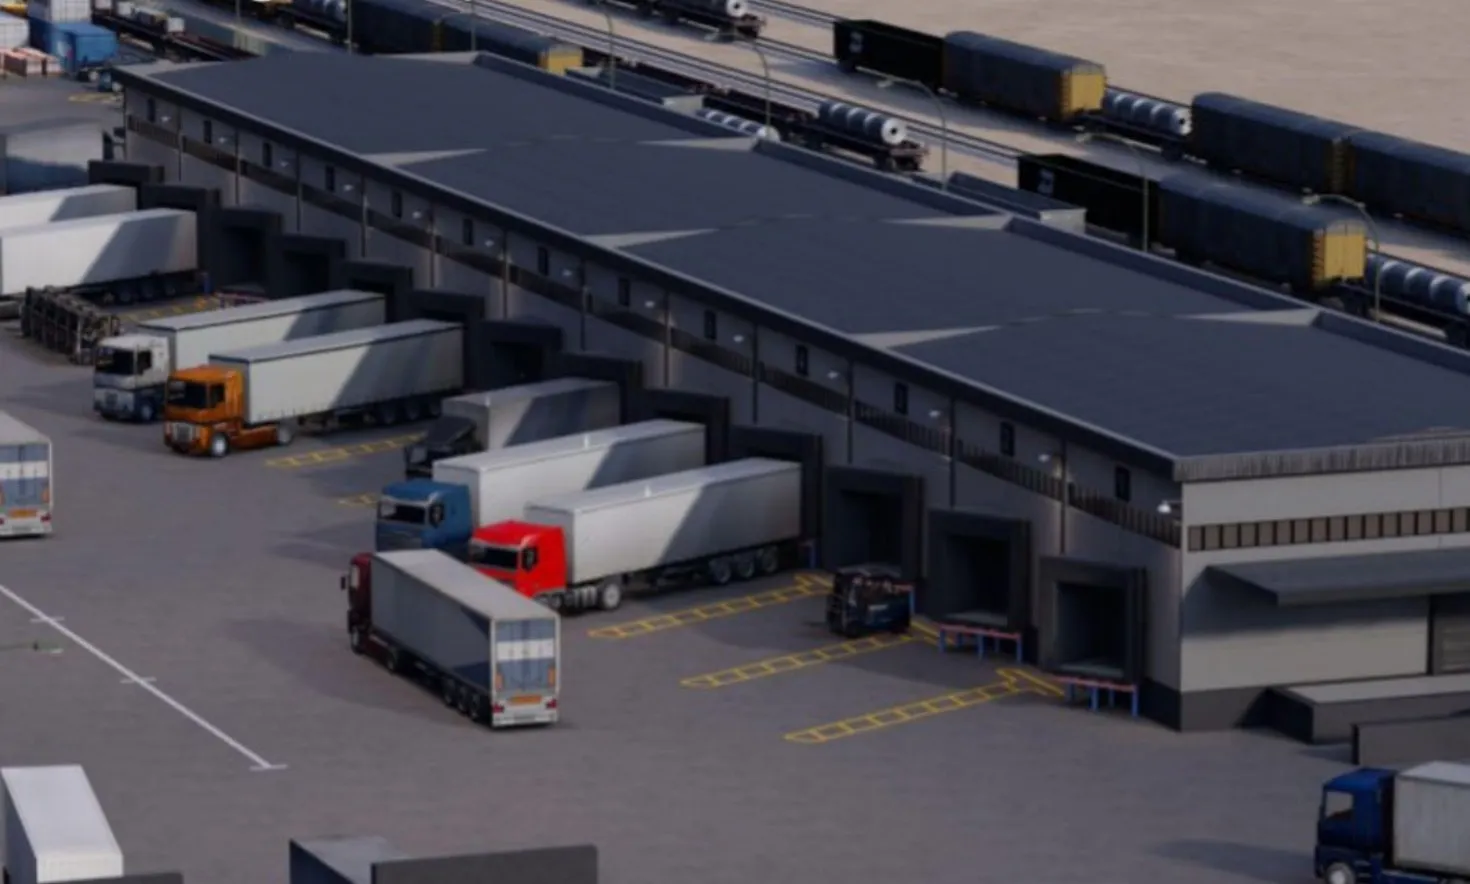 
											
											Andijonda Germaniya kompaniyasi bilan hamkorlikda multimodal transport logistika markazi tashkil etiladi
											
											